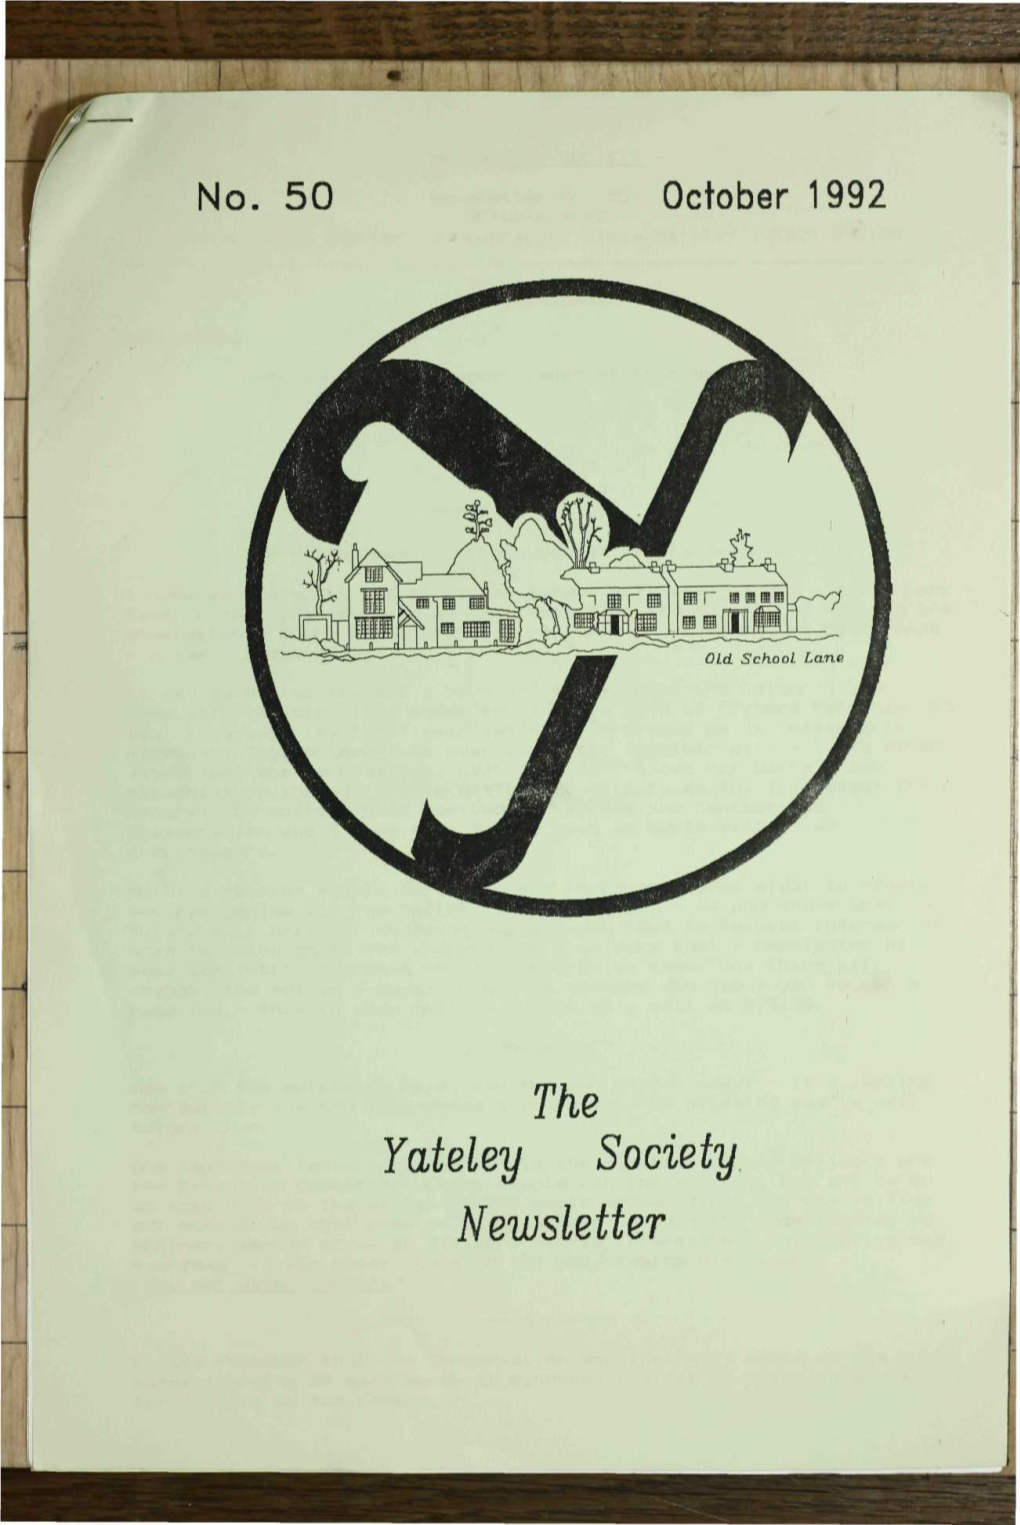 The Yateley Society Newsletter - 1 - - the VATELEY SOCIETY - Newsletter No